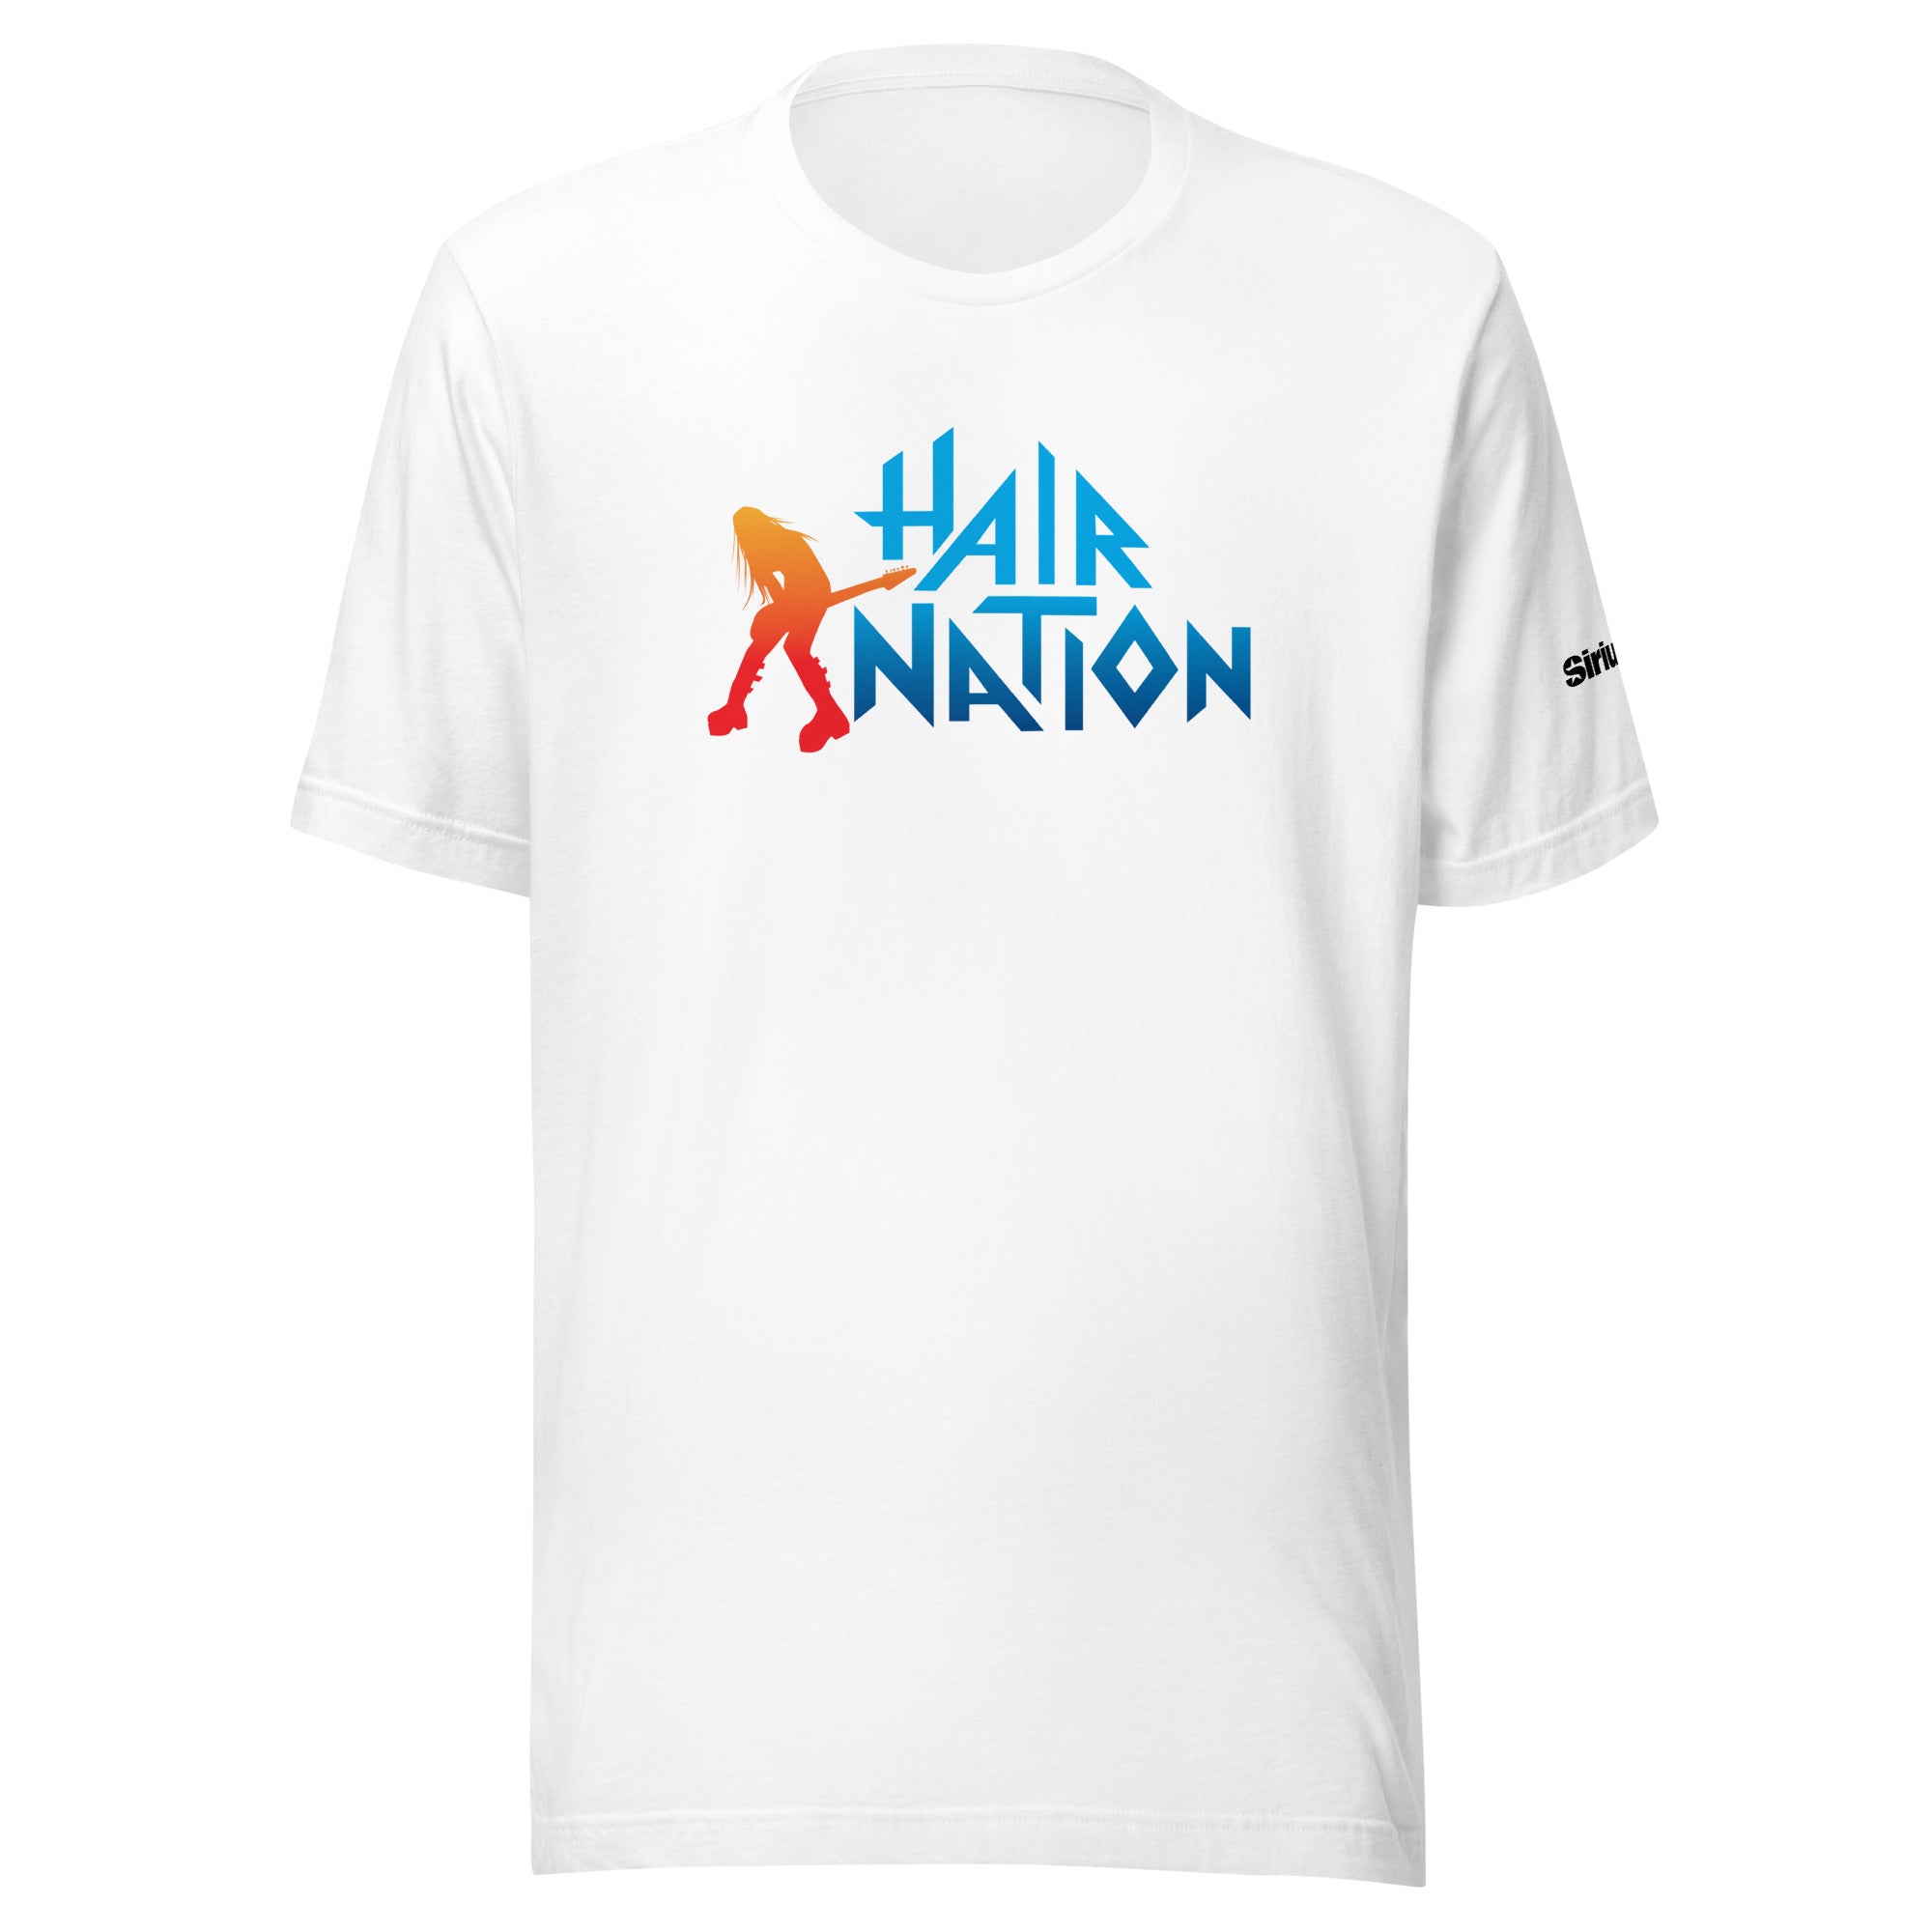 Hair Nation: T-shirt (White)